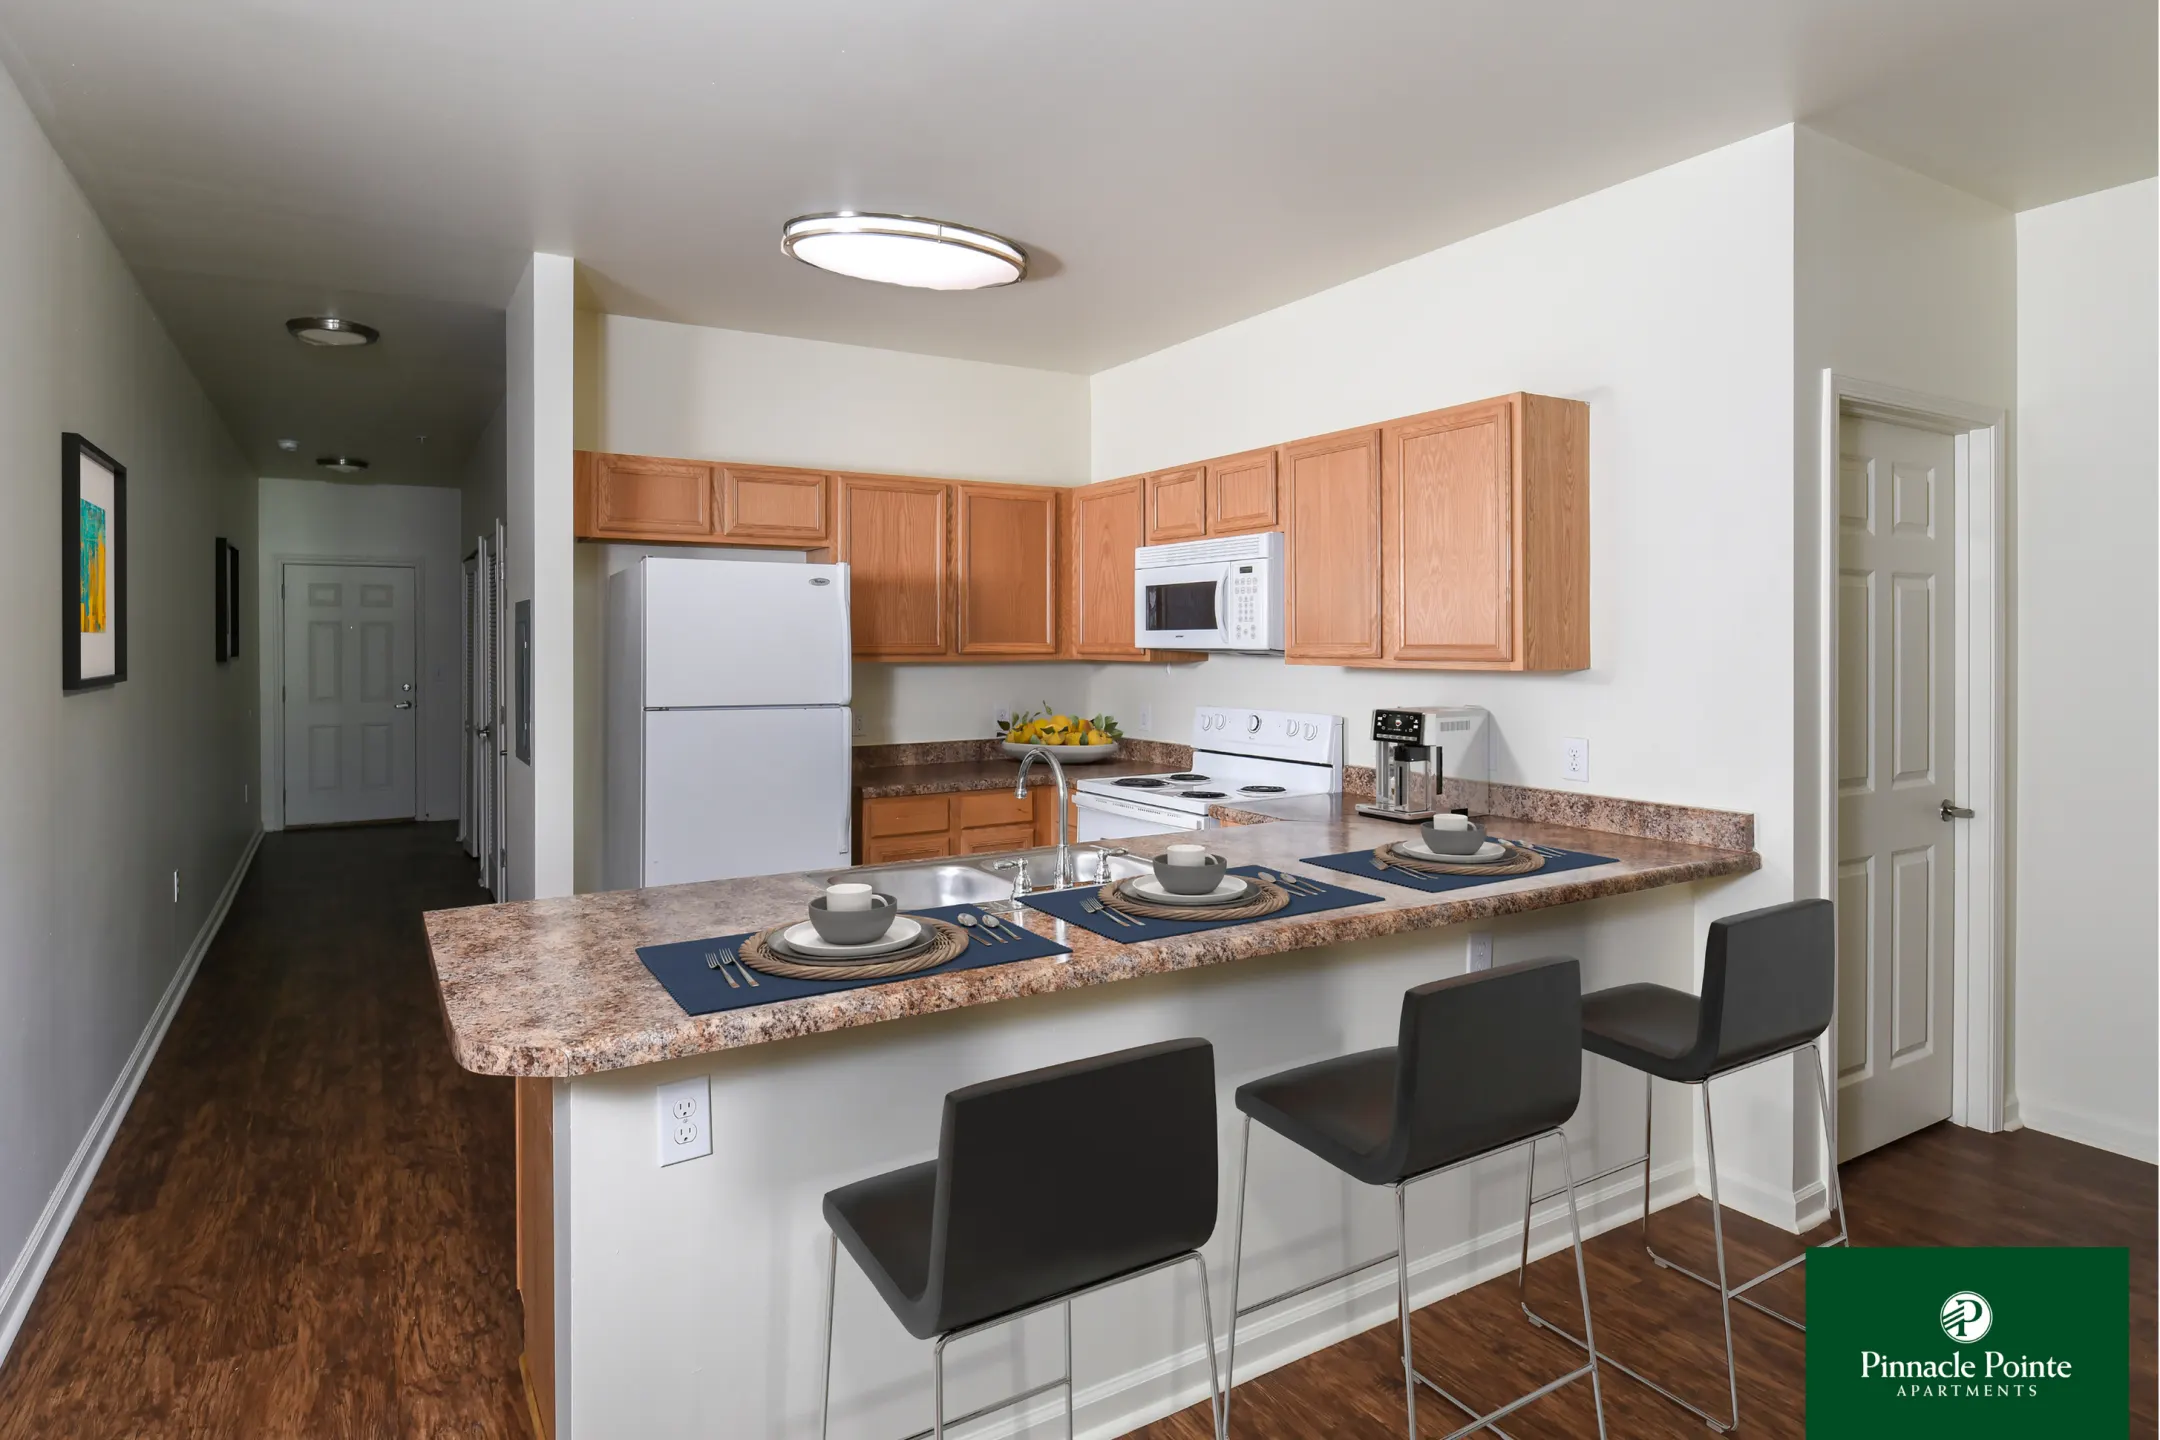 Kitchen - Pinnacle Pointe Apartments - Crestview, FL